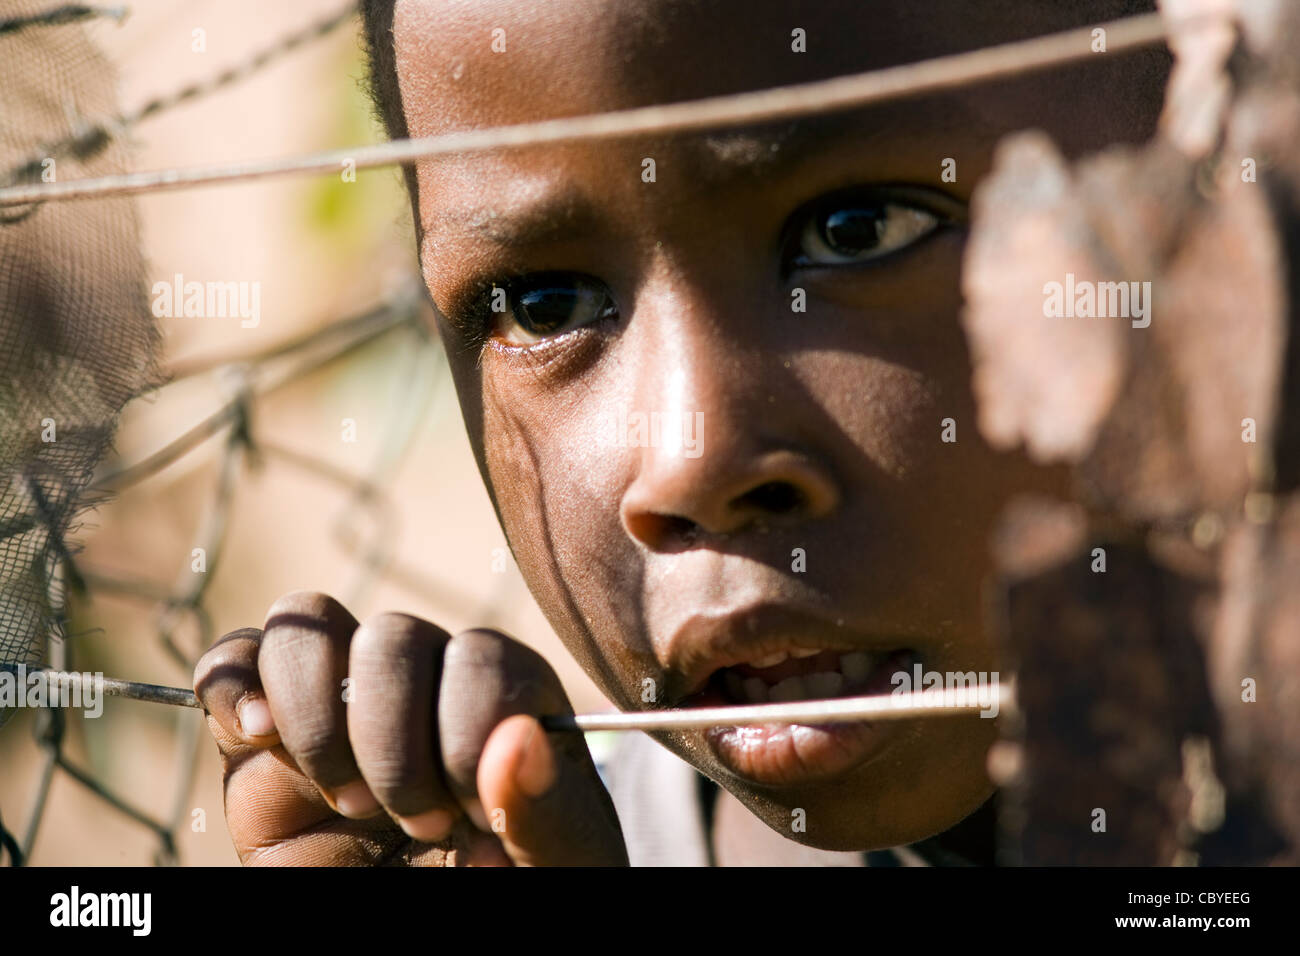 Afrikanischen jungen suchen durch Draht Zaun - Twyfelfontein - Damaraland, Namibia, Afrika Stockfoto